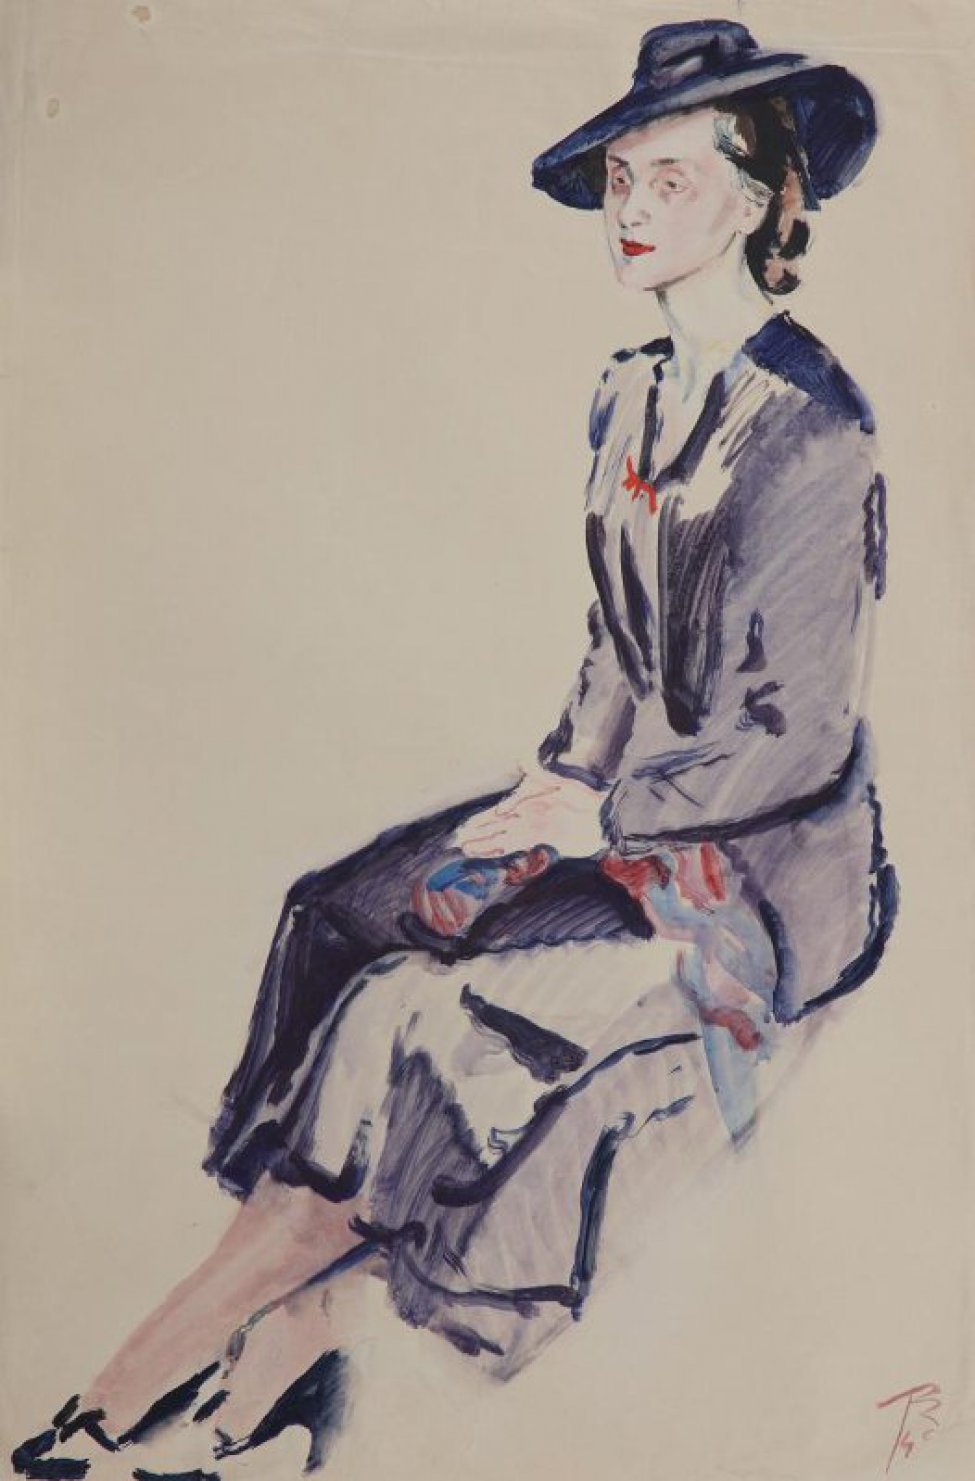 Изображена женщина, сидящая в 3/4 правом повороте; ноги скрещены; руки лежат на коленях. На женщине сине-серое платье с красным бантиком, синие туфли и синяя шляпка.